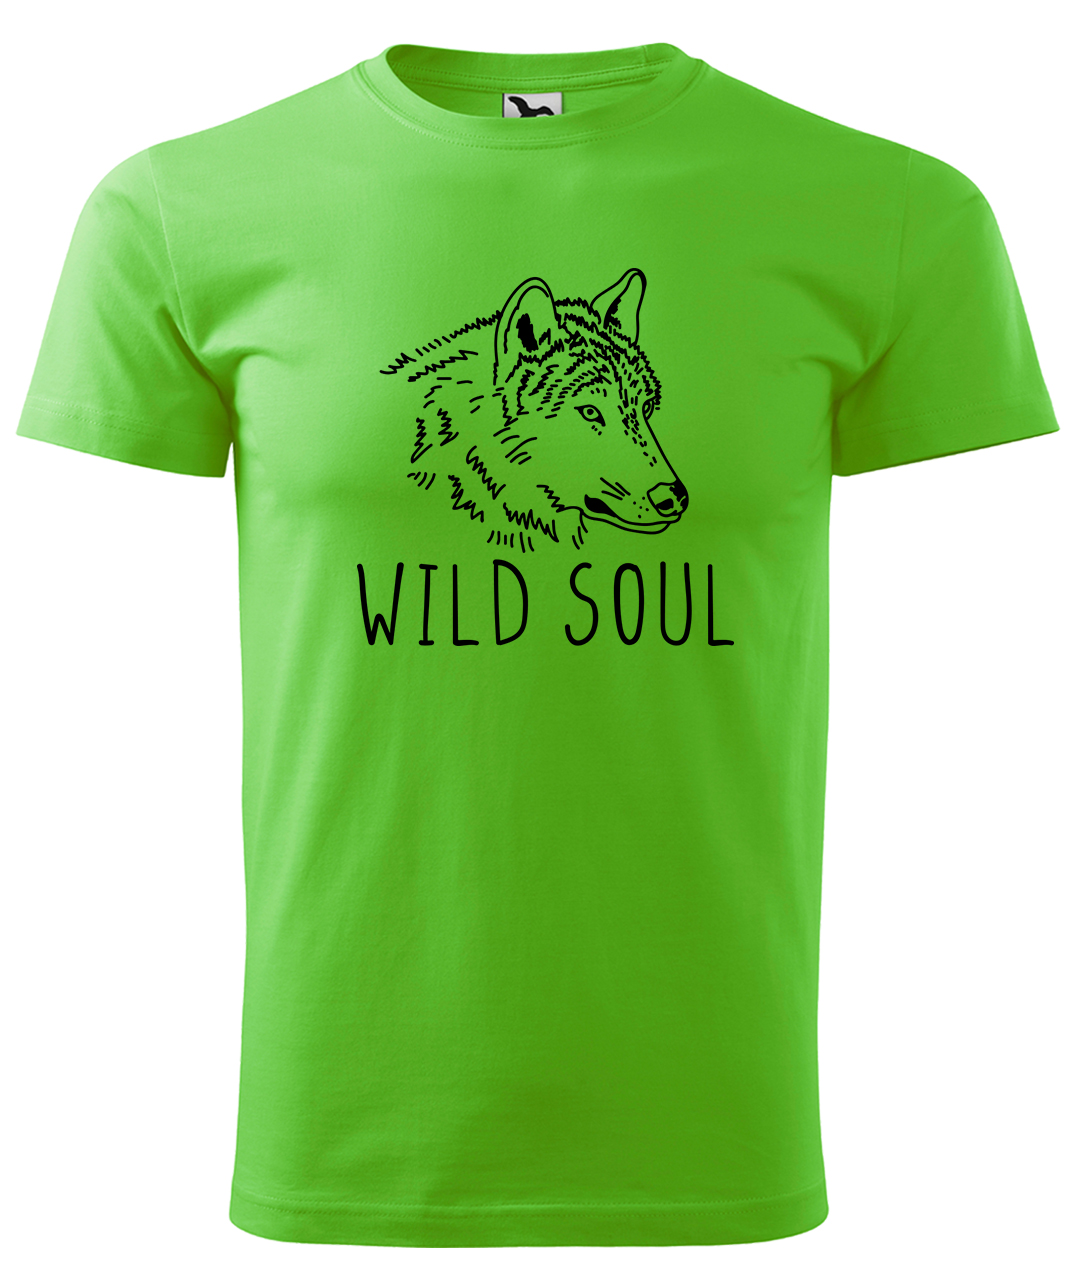 Dětské tričko s vlkem - Wild soul Velikost: 4 roky / 110 cm, Barva: Apple Green (92), Délka rukávu: Krátký rukáv